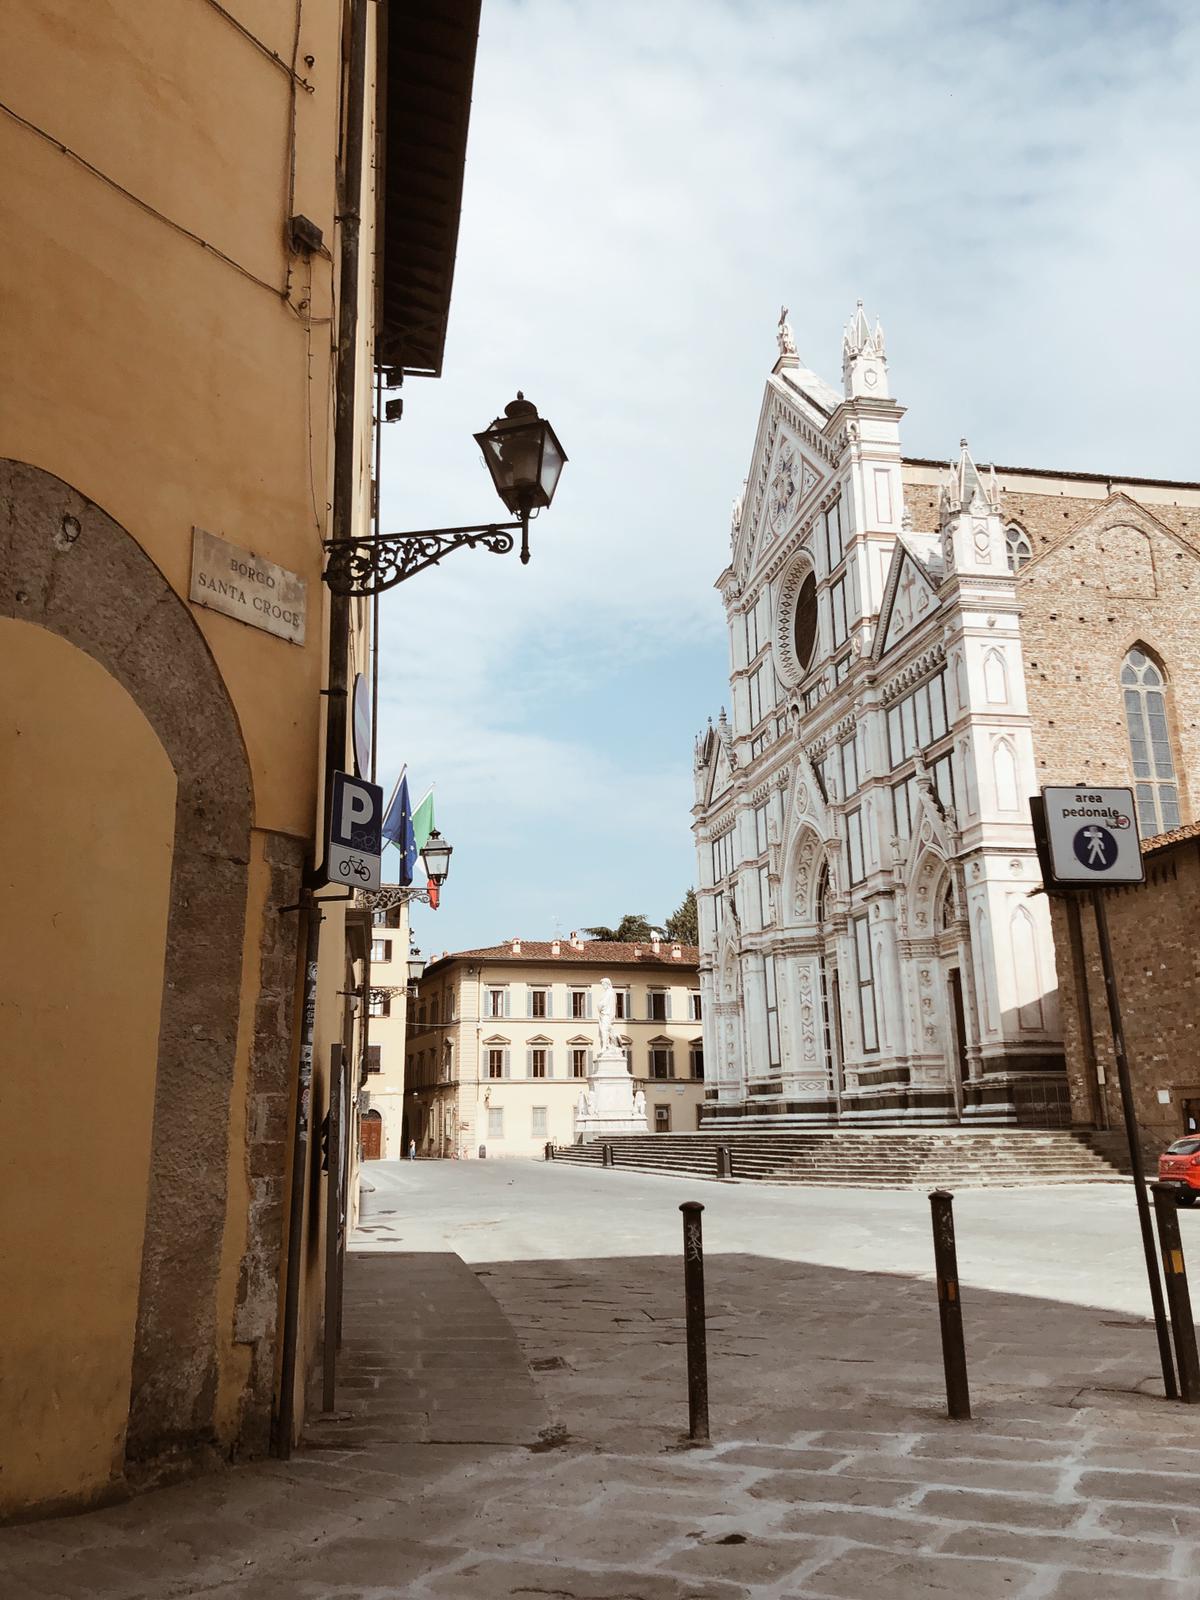 Imagem histórica e rara para Florença. A praça de Santa Croce completamente vazia durante o período de quarentena dos italianos (Foto: Luiza Vegini)